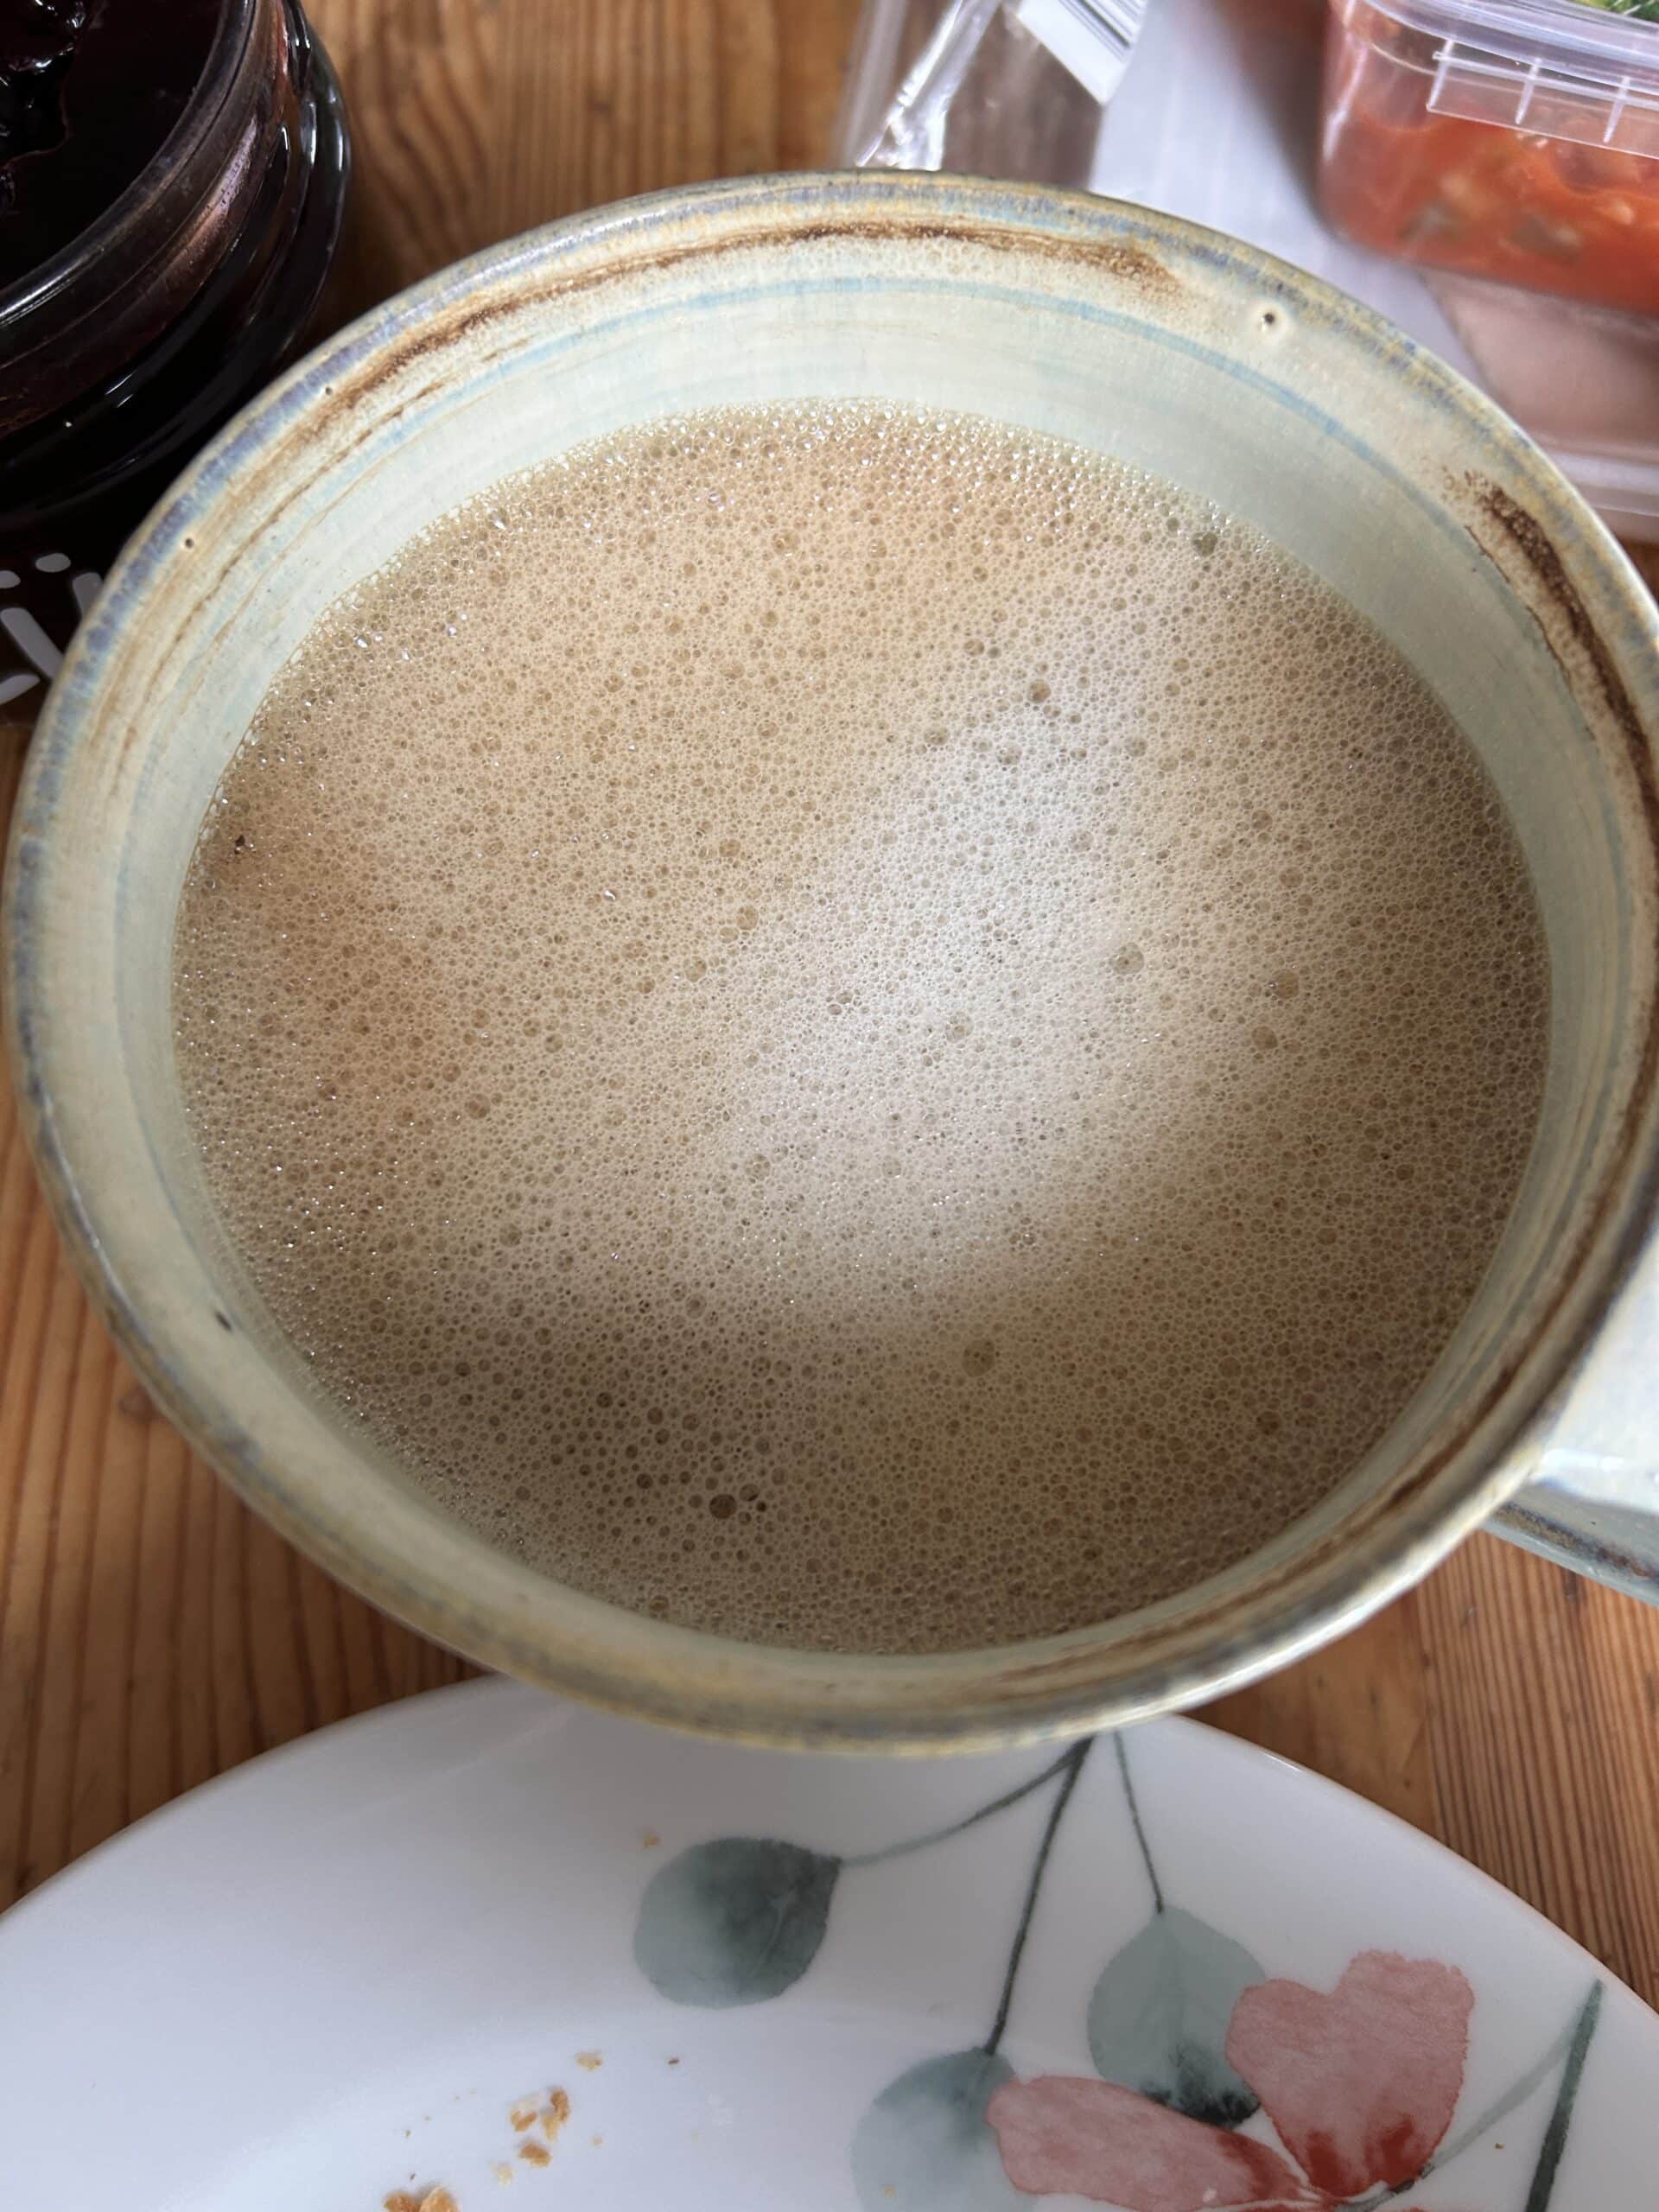 Hallo Sonntag. Der Haferkaffee schmeckt komisch. Echt krass wie unterschiedlich gut diese Hafermilch Dinger sind.